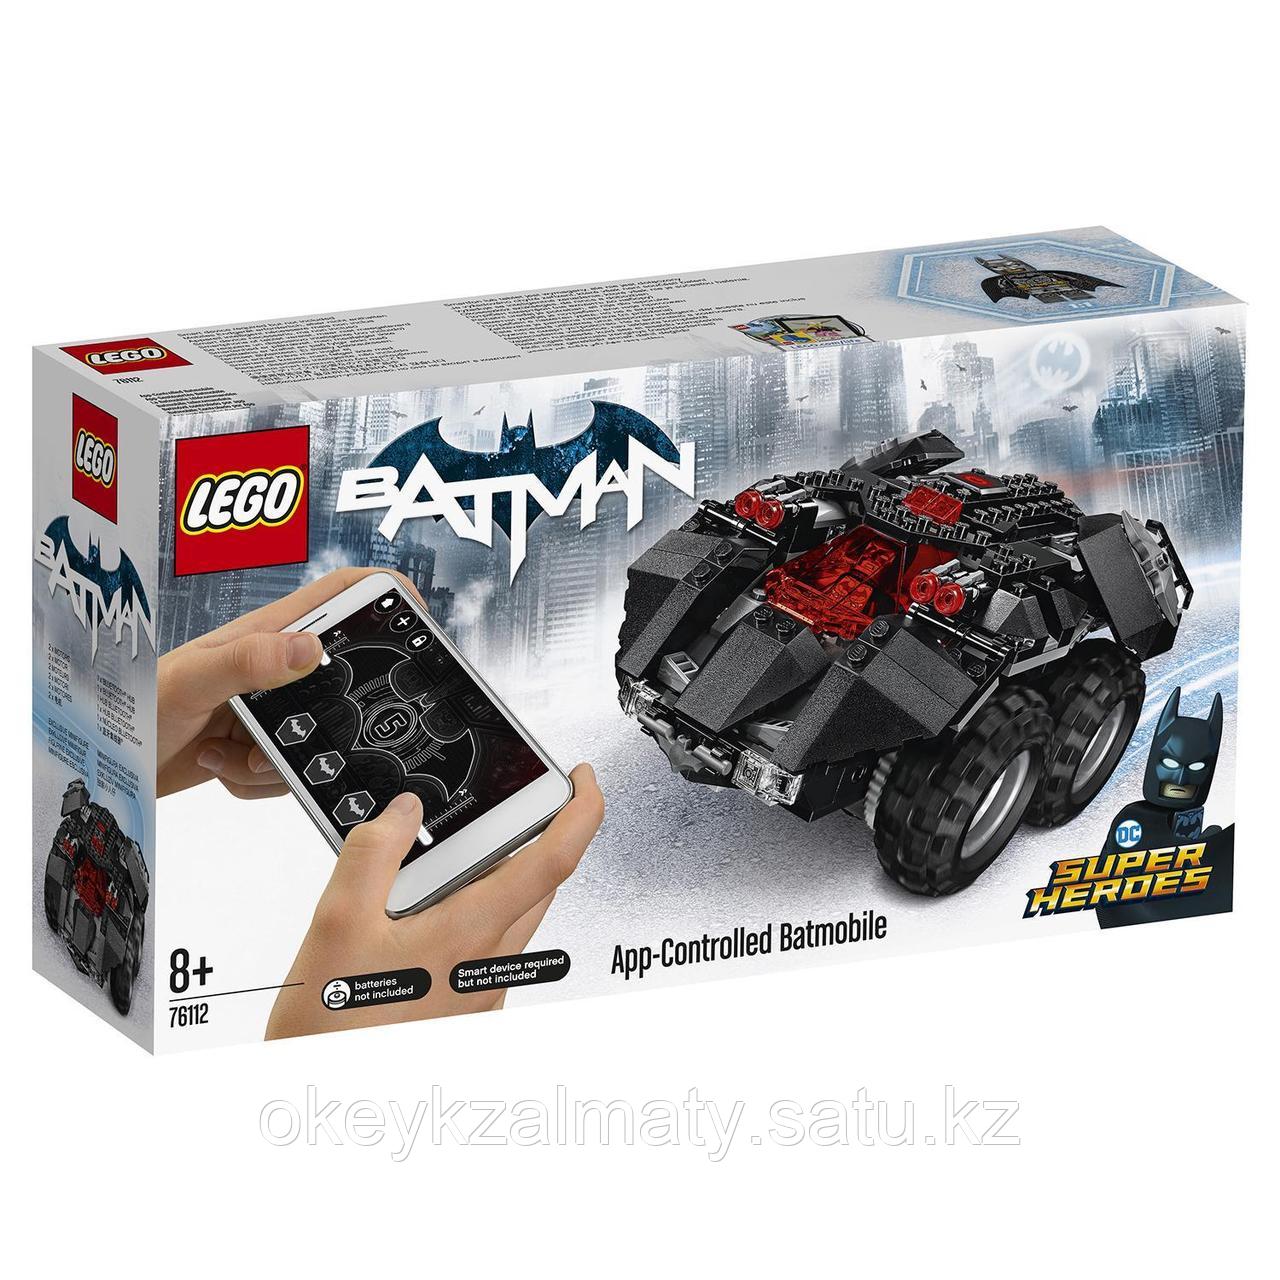 LEGO Super Heroes: Бэтмобиль с дистанционным управлением 76112